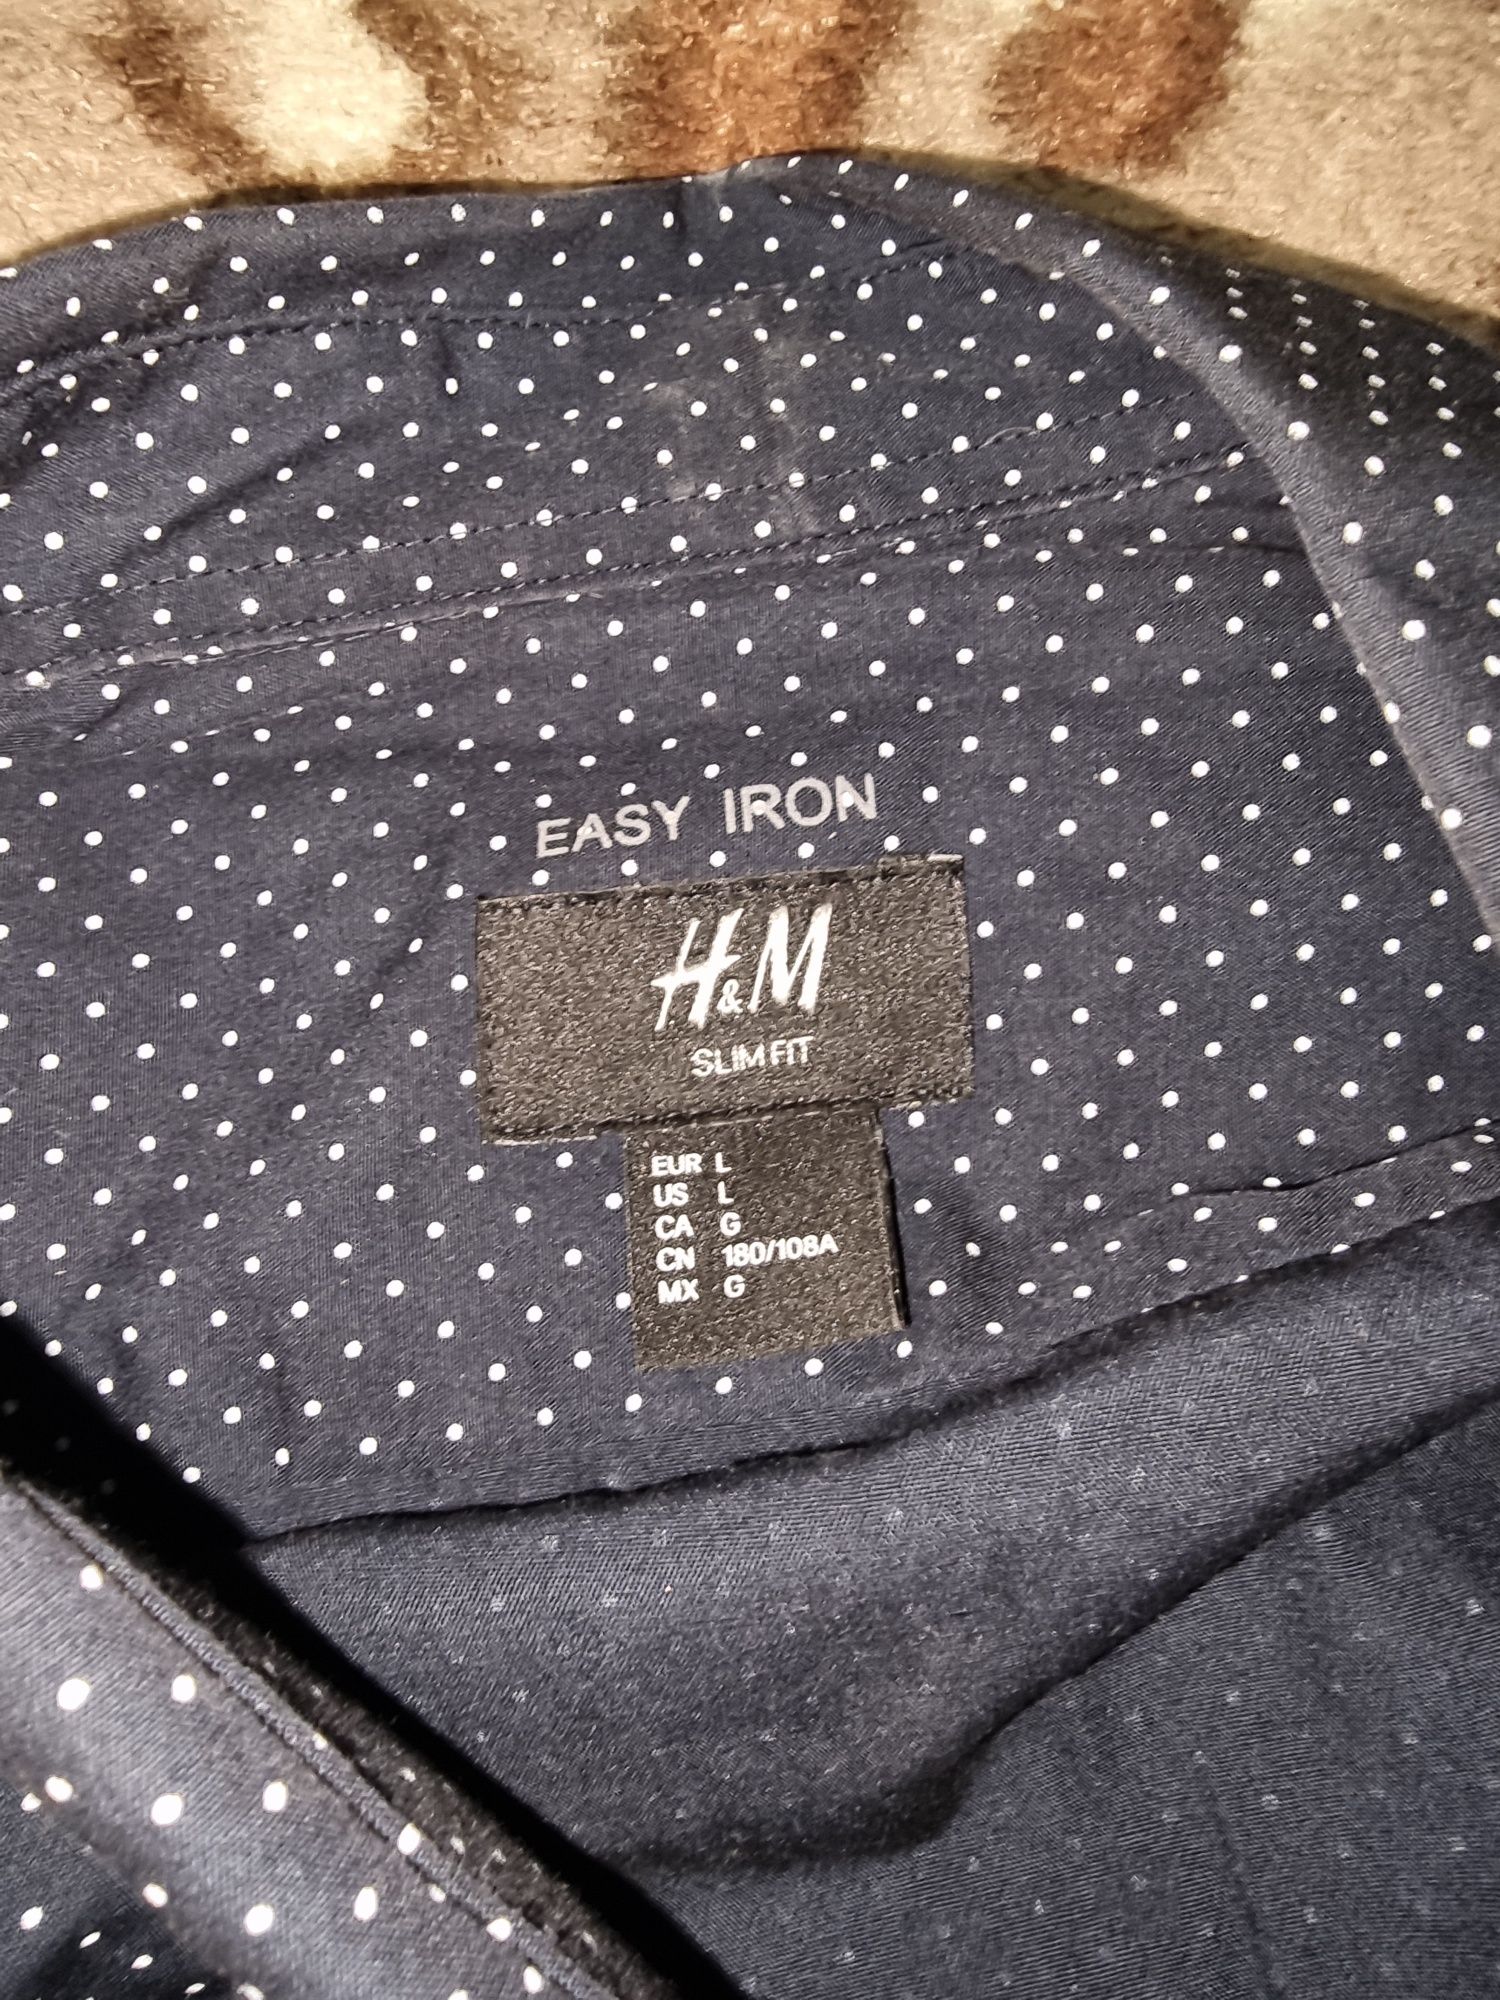 Camasi casual H&m